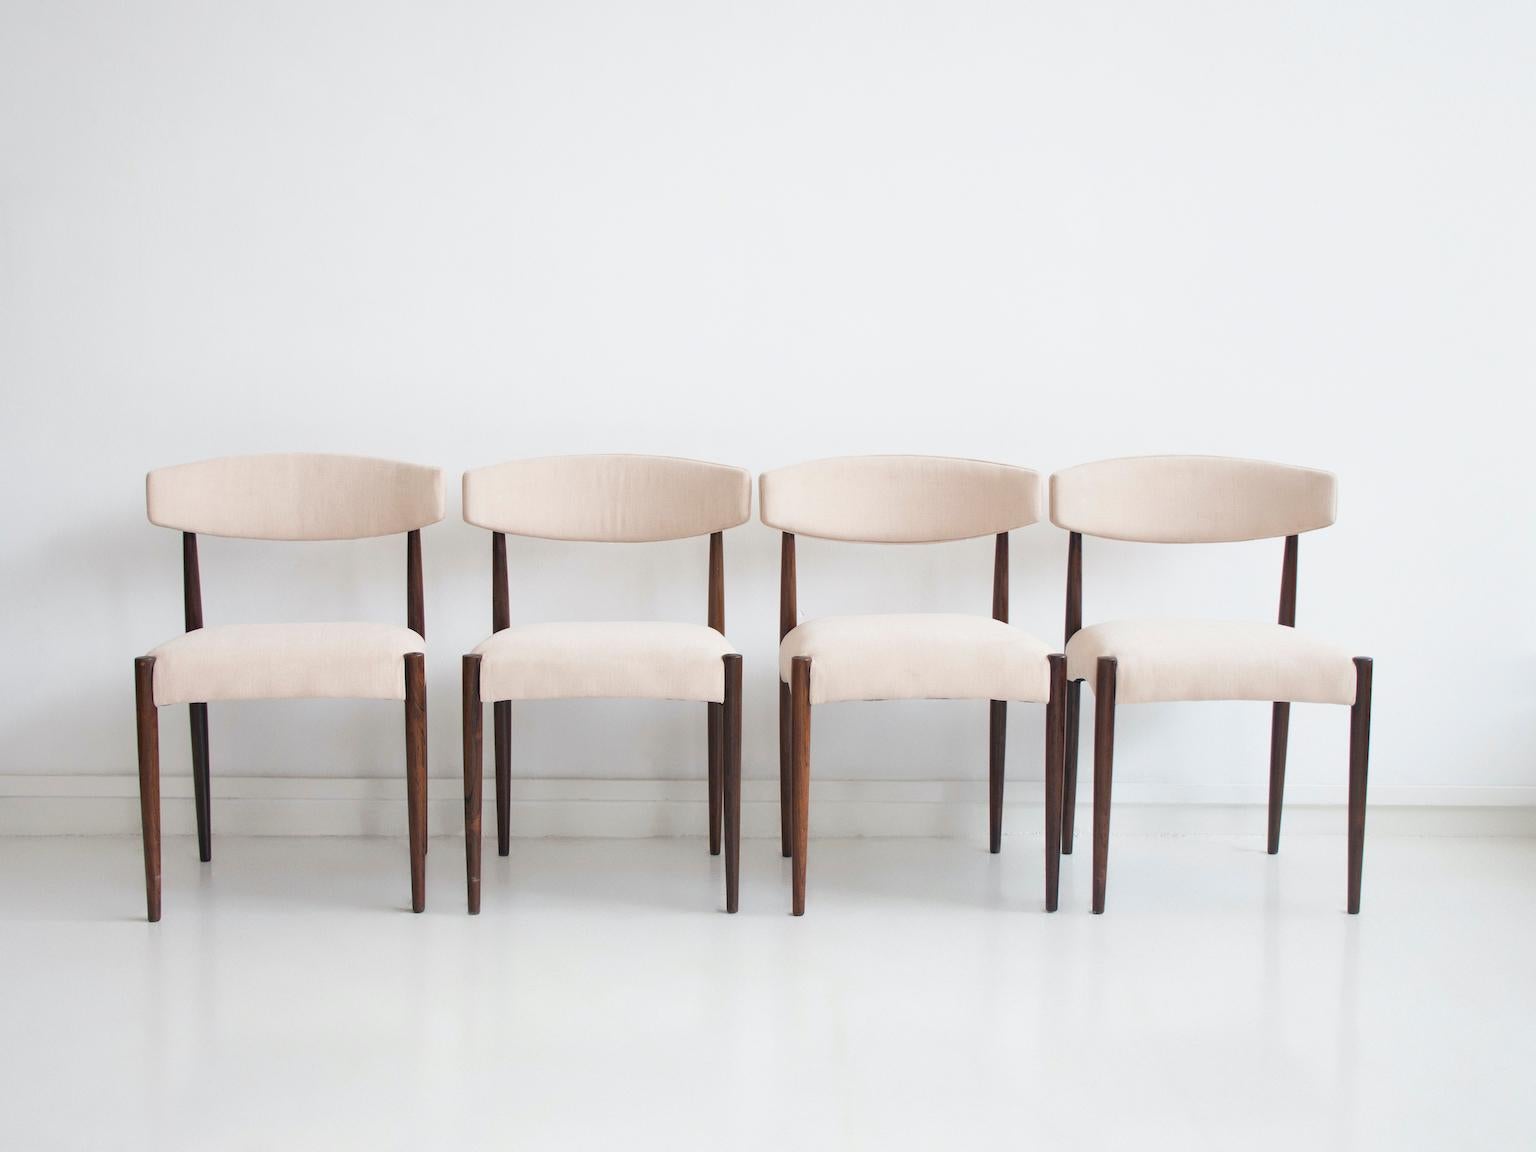 Satz von vier Esszimmerstühlen, hergestellt in Dänemark um 1960. Der Rahmen mit den schlanken Beinen ist aus Königsholz gefertigt. Sitz und Rückenlehne mit späterer Polsterung in hellem Stoff.